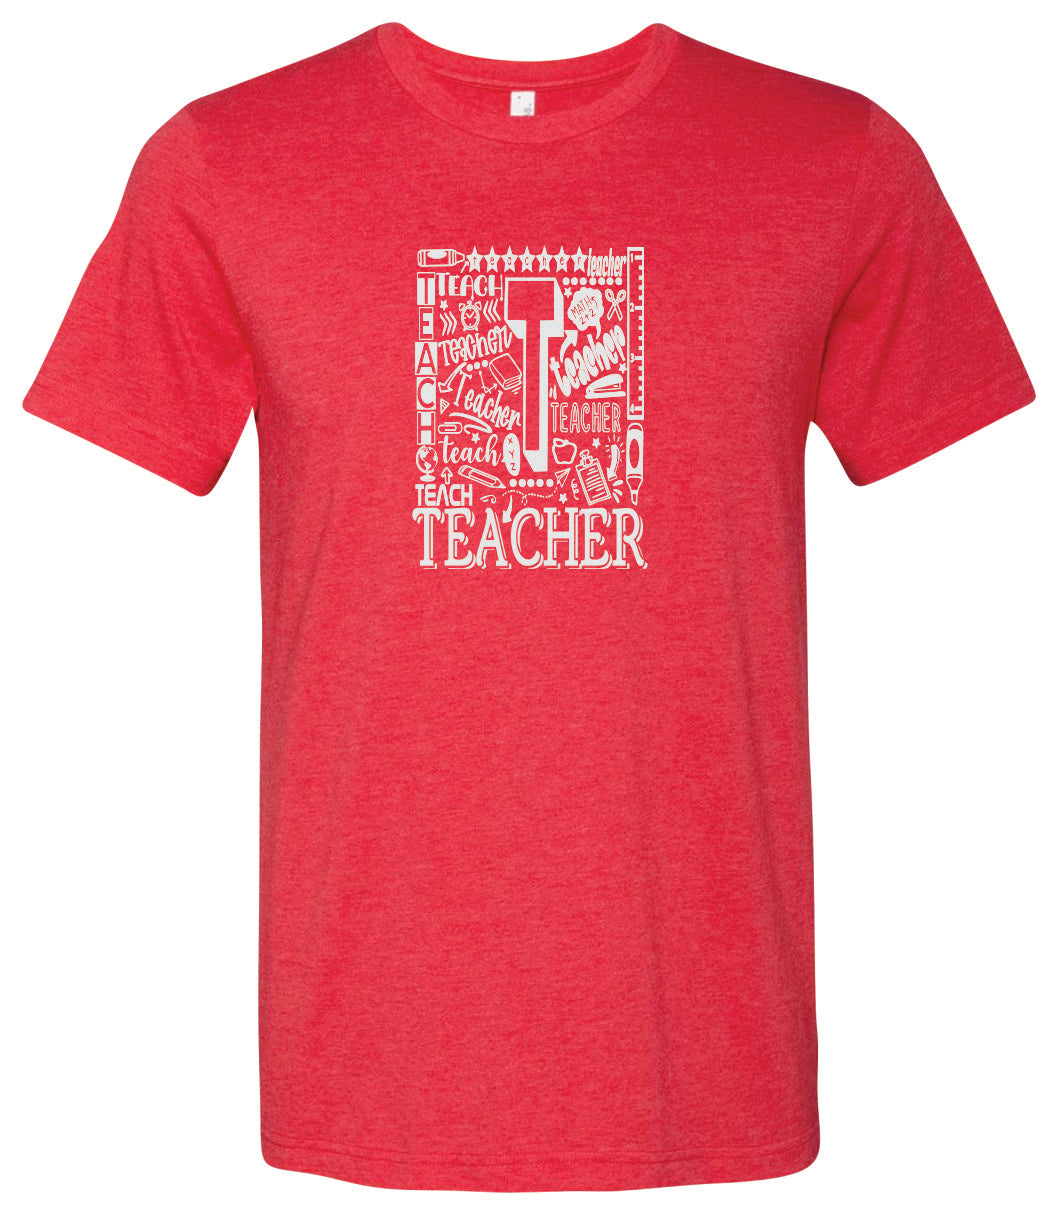 Teacher Short Sleeve Graphic T-shirt